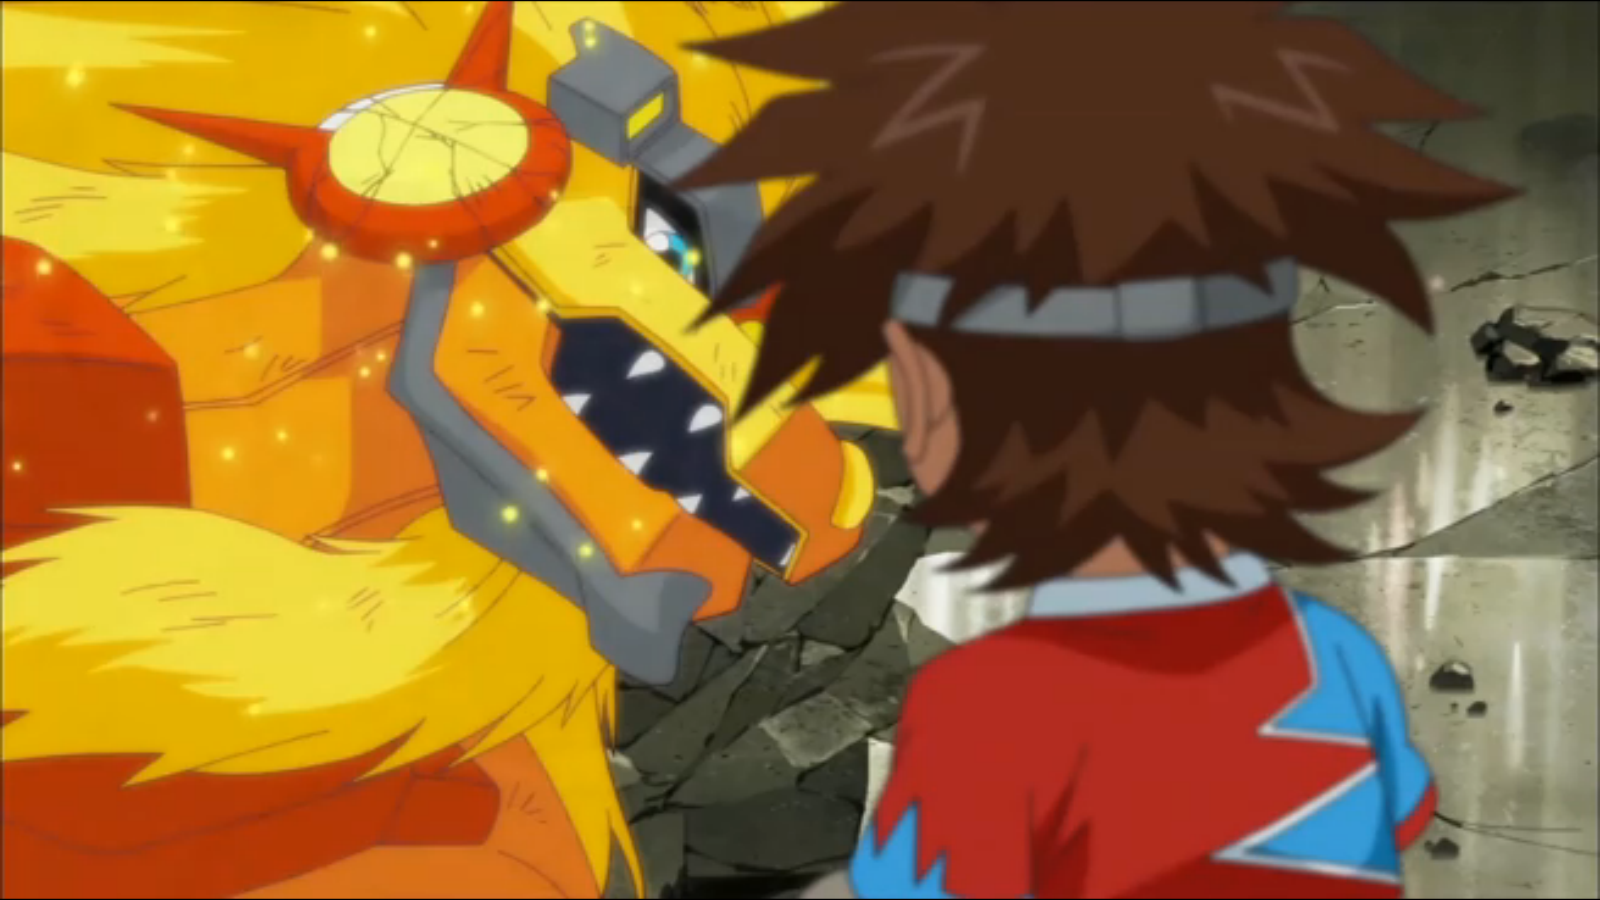 Digimon System Restore Fusion Episode The Darkest Dark